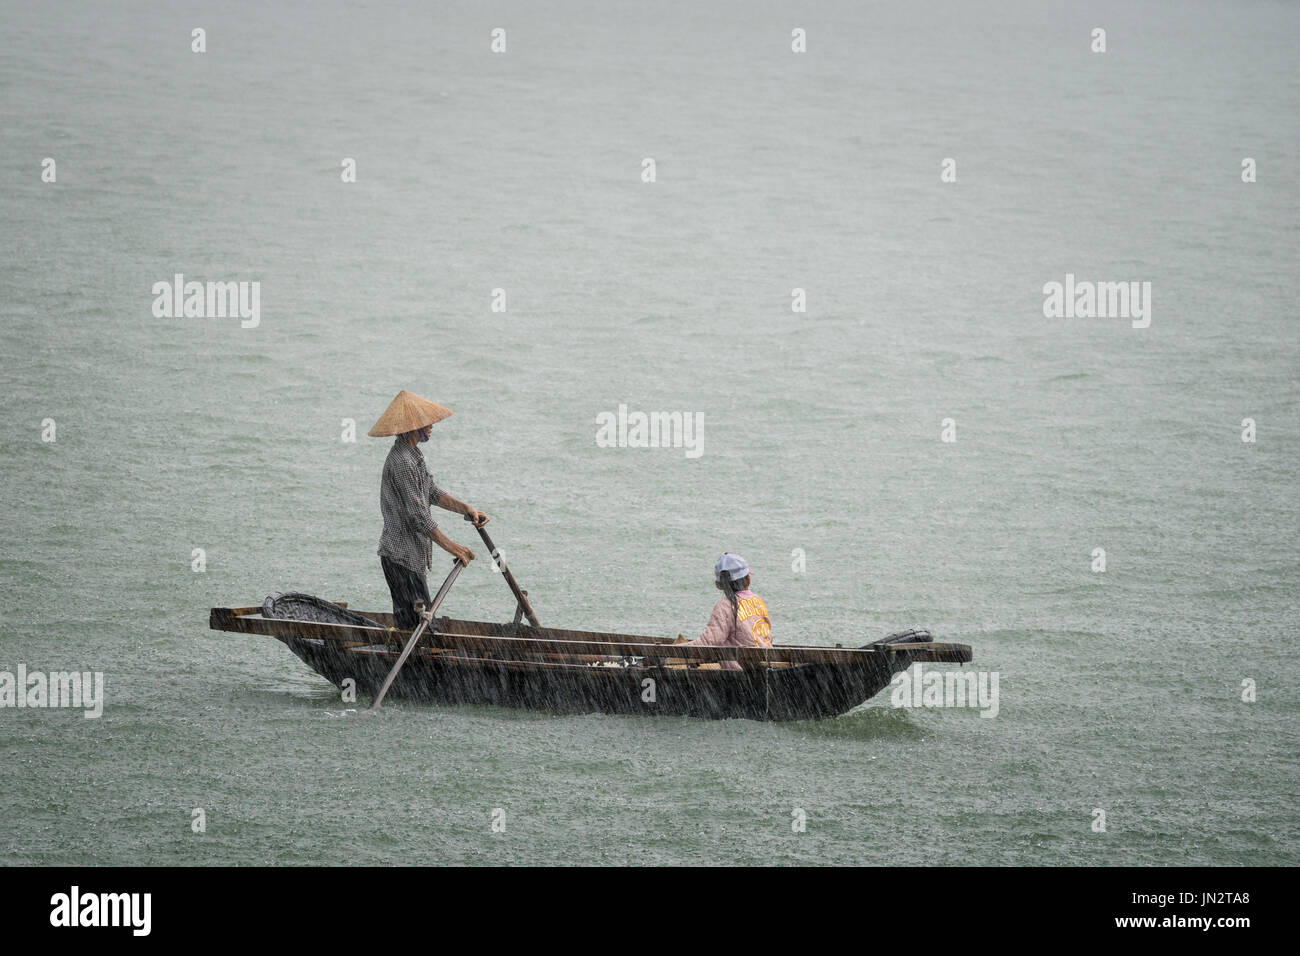 Padre e hija vietnamita en un bote de remos atrapados en la lluvia torrencial durante una tormenta en el mar Foto de stock